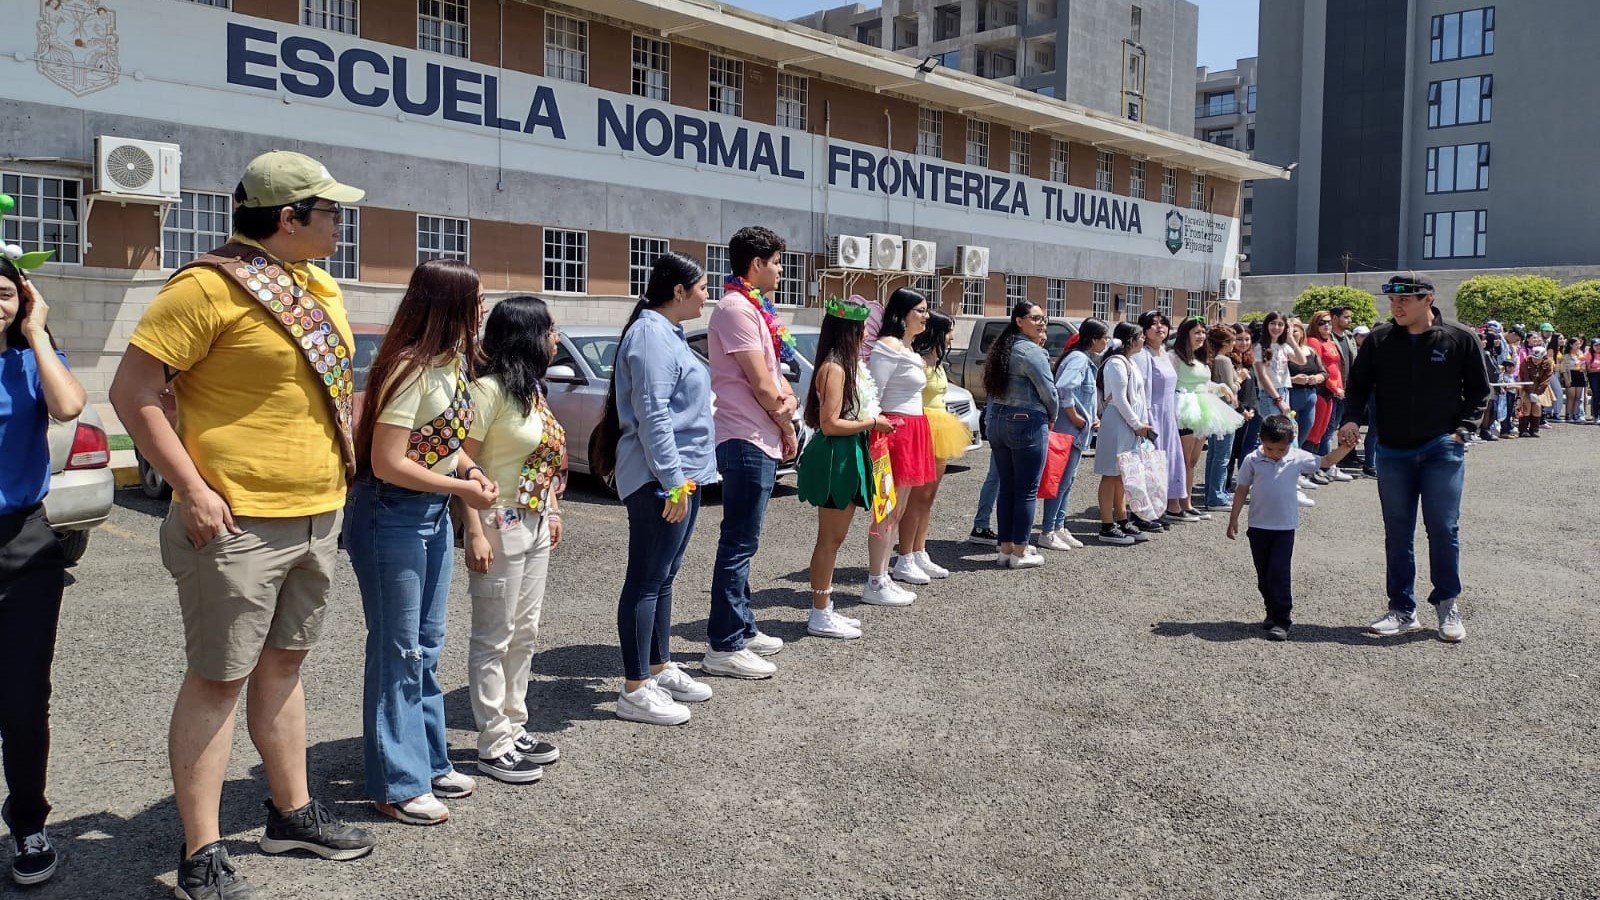 Escuela Normal Fronteriza Tijuana festeja Día del Niño IFOTO: Cortesía